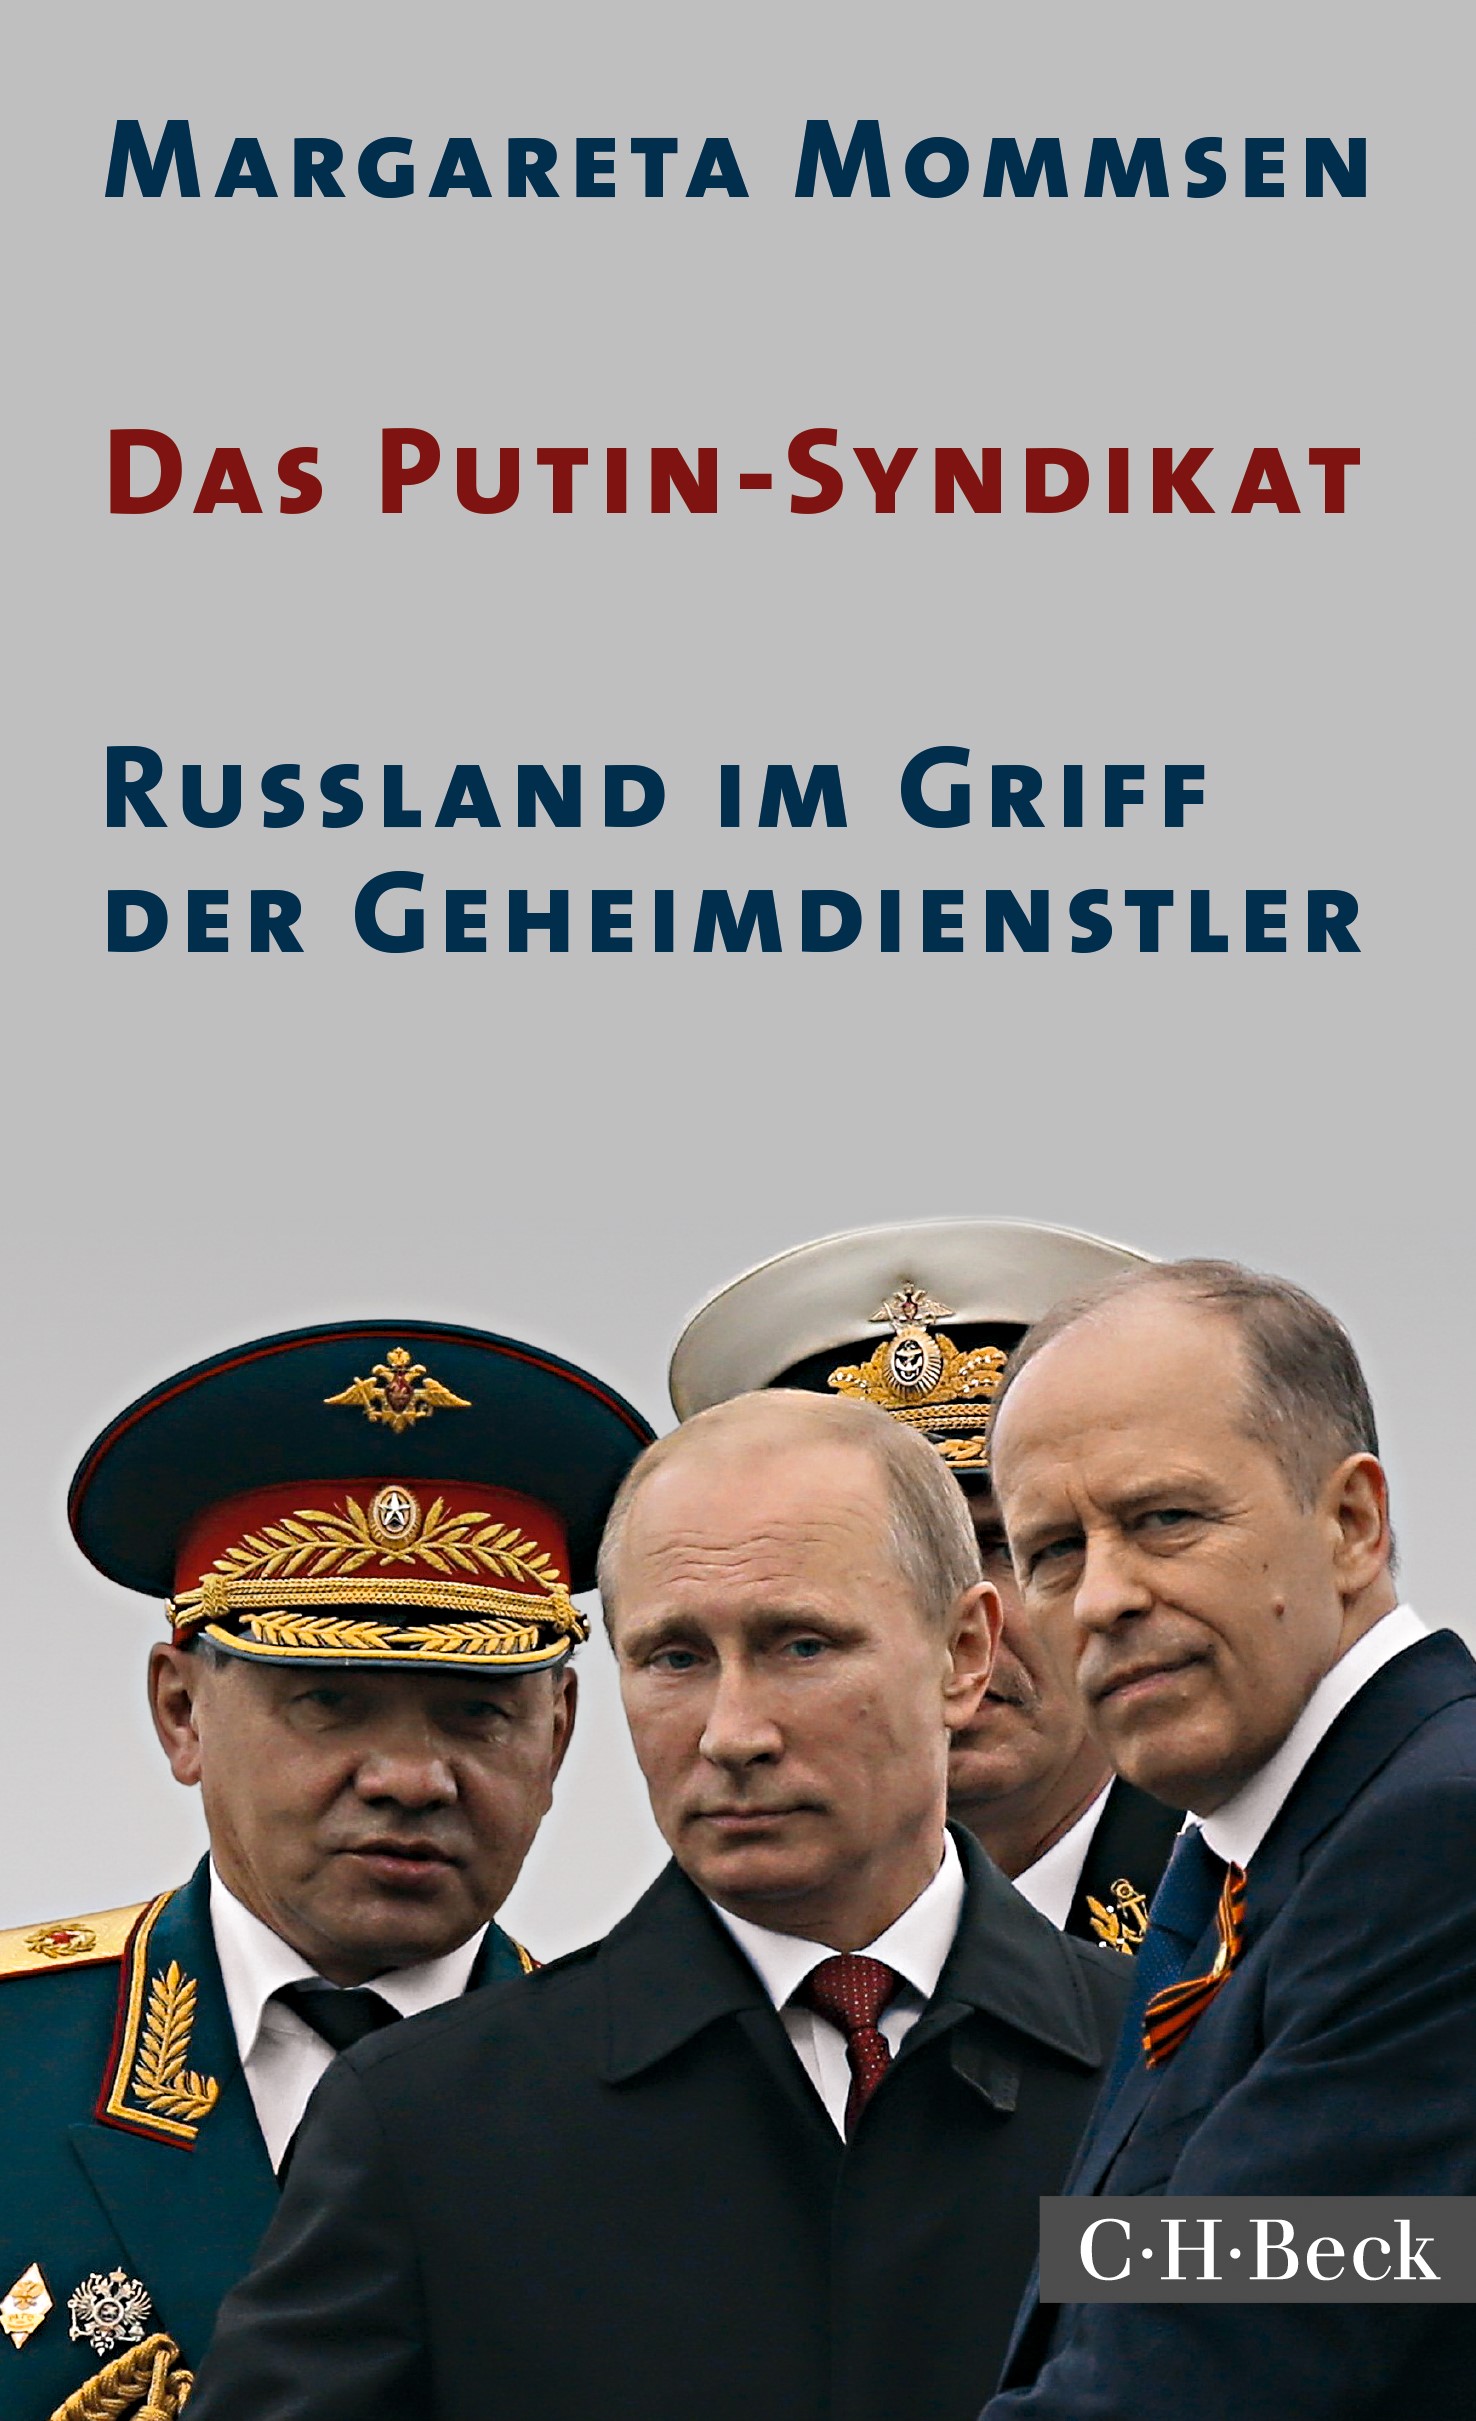 Cover: Mommsen, Margareta, Das Putin-Syndikat